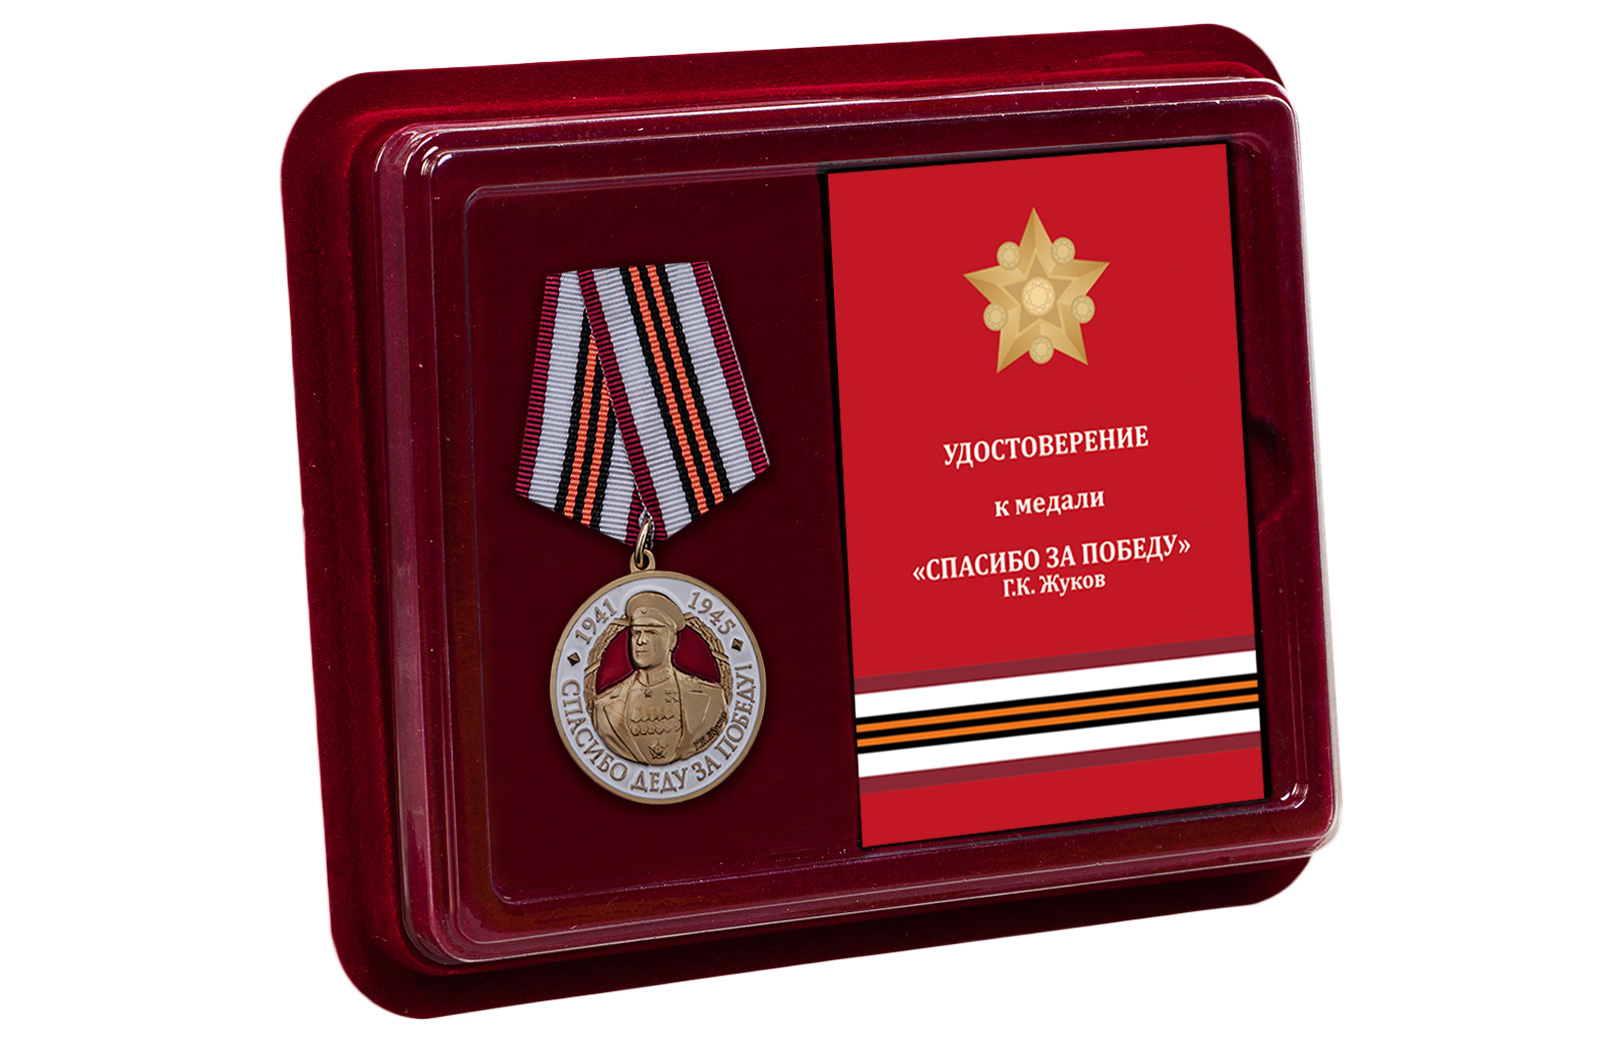 Купить медаль с Жуковым Спасибо деду за Победу! оптом или в розницу